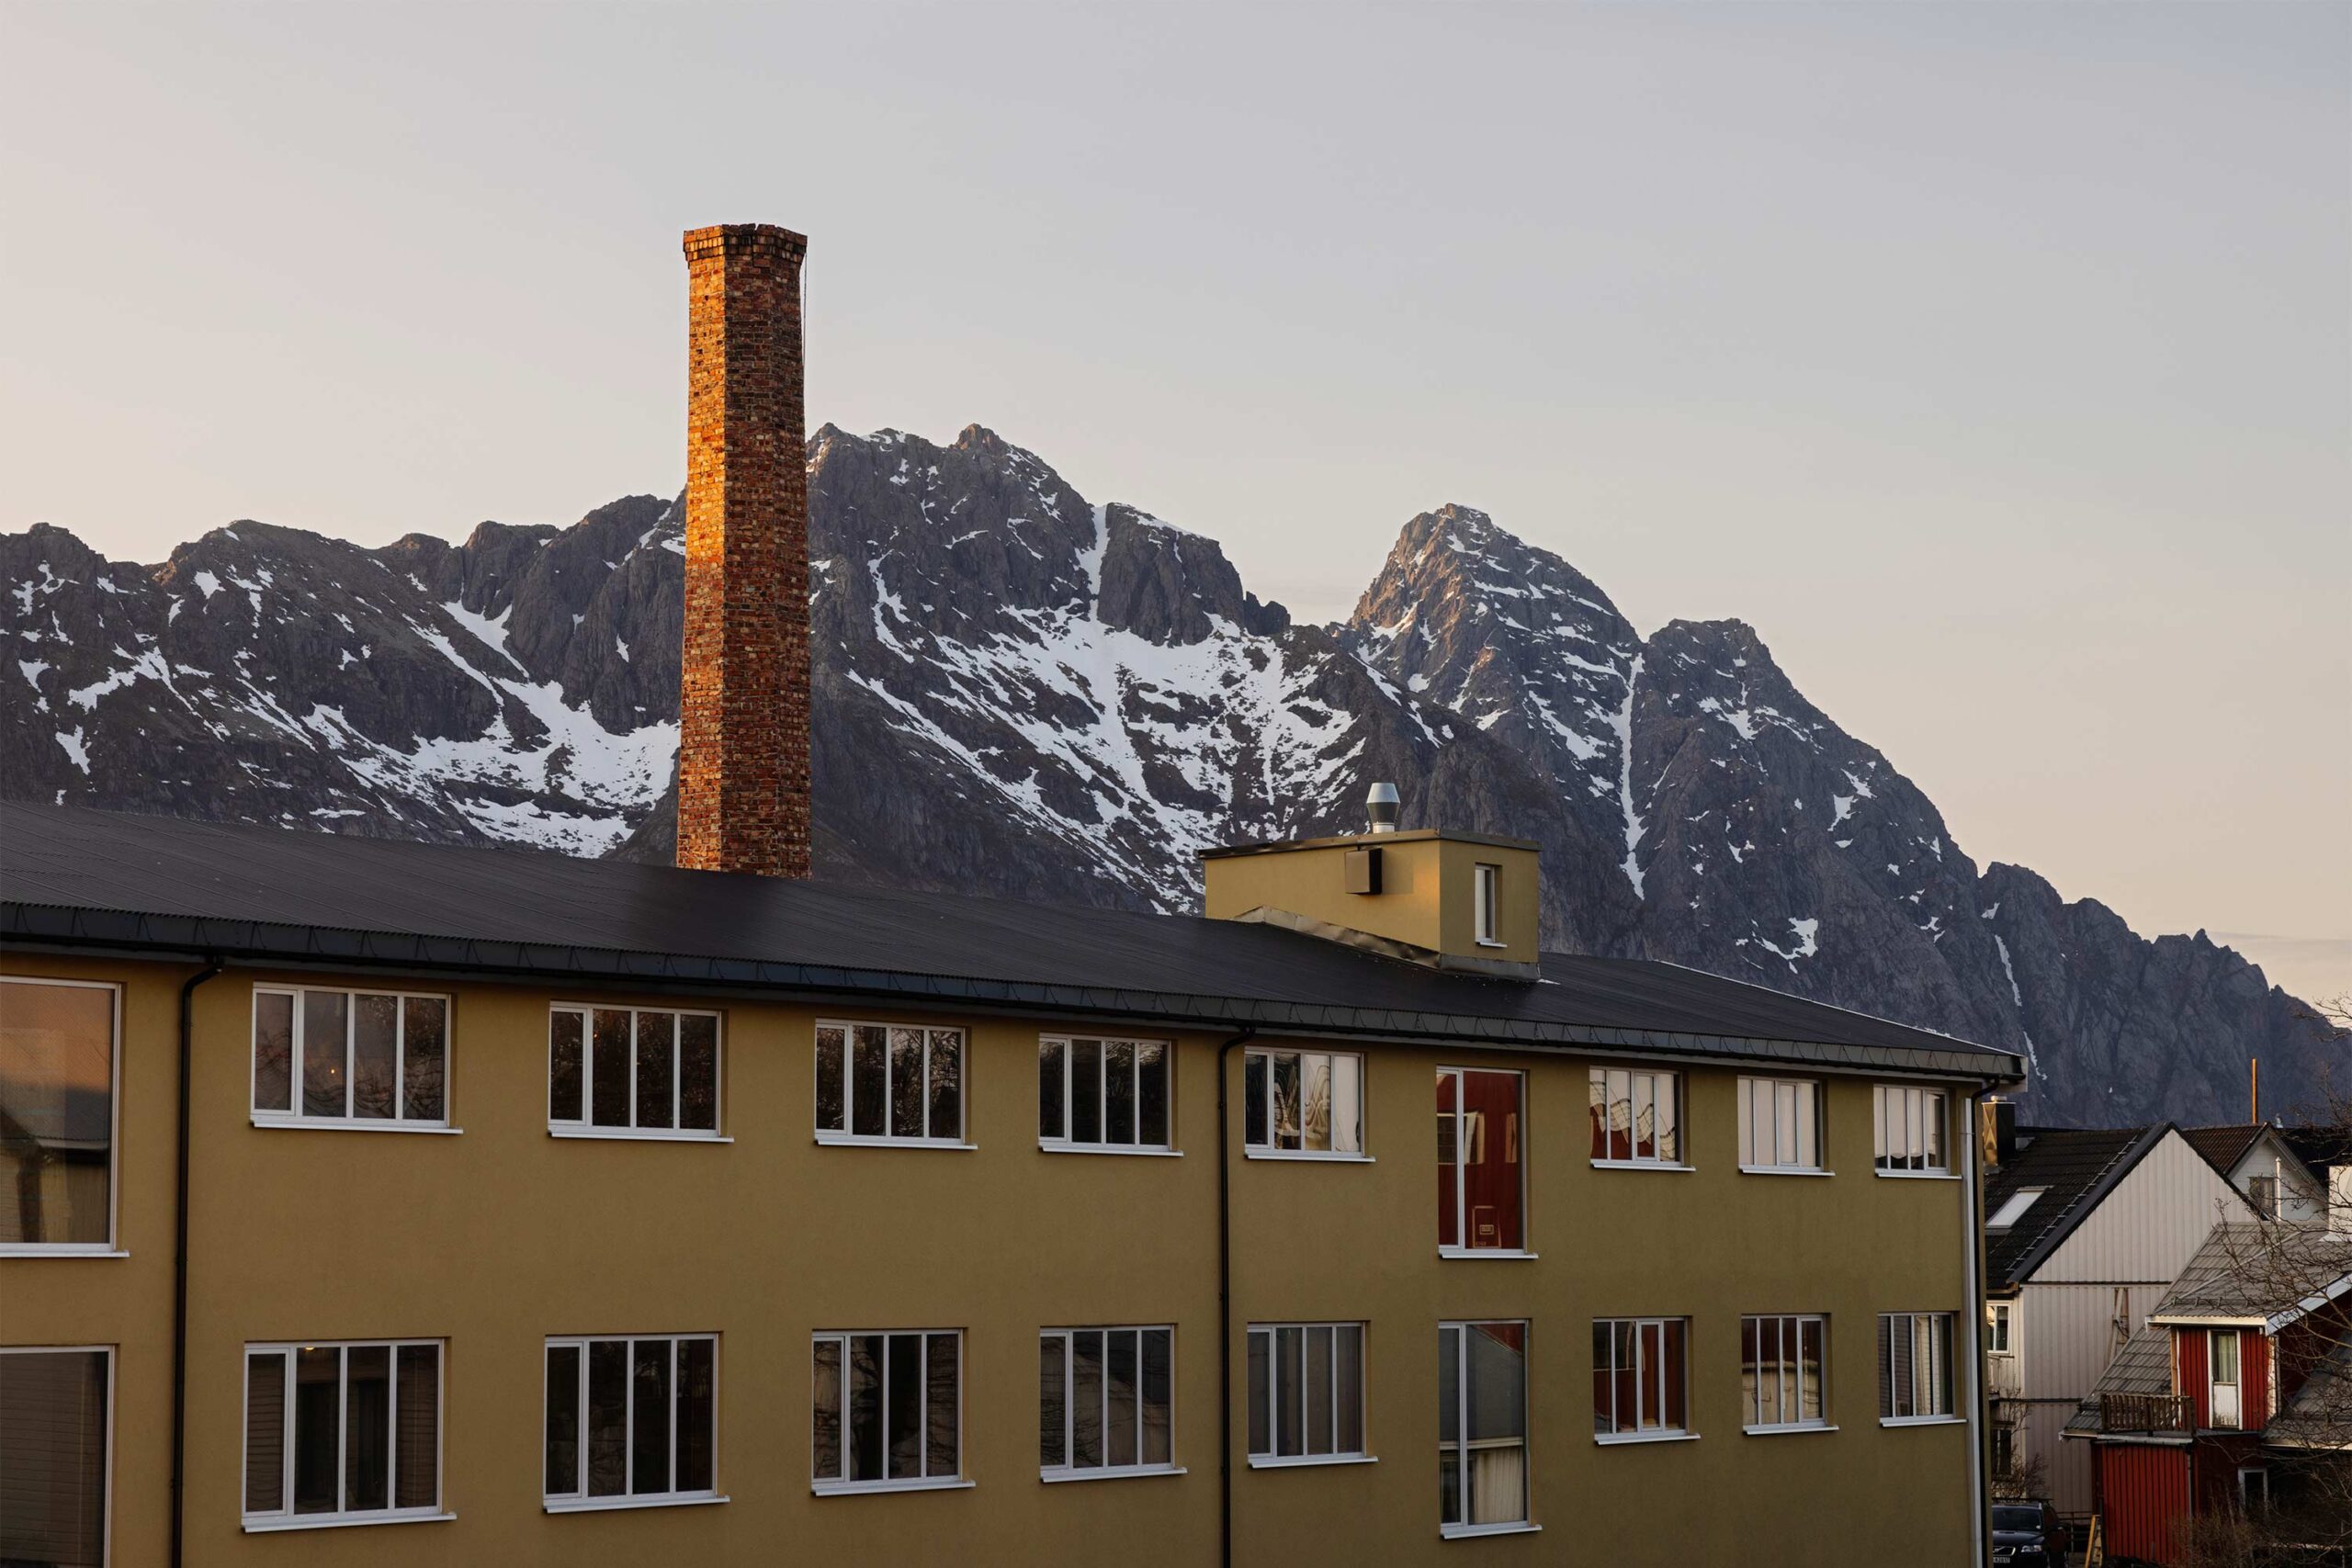 Le bâtiment nouvellement isolé, entouré des montagnes de Lofoten.